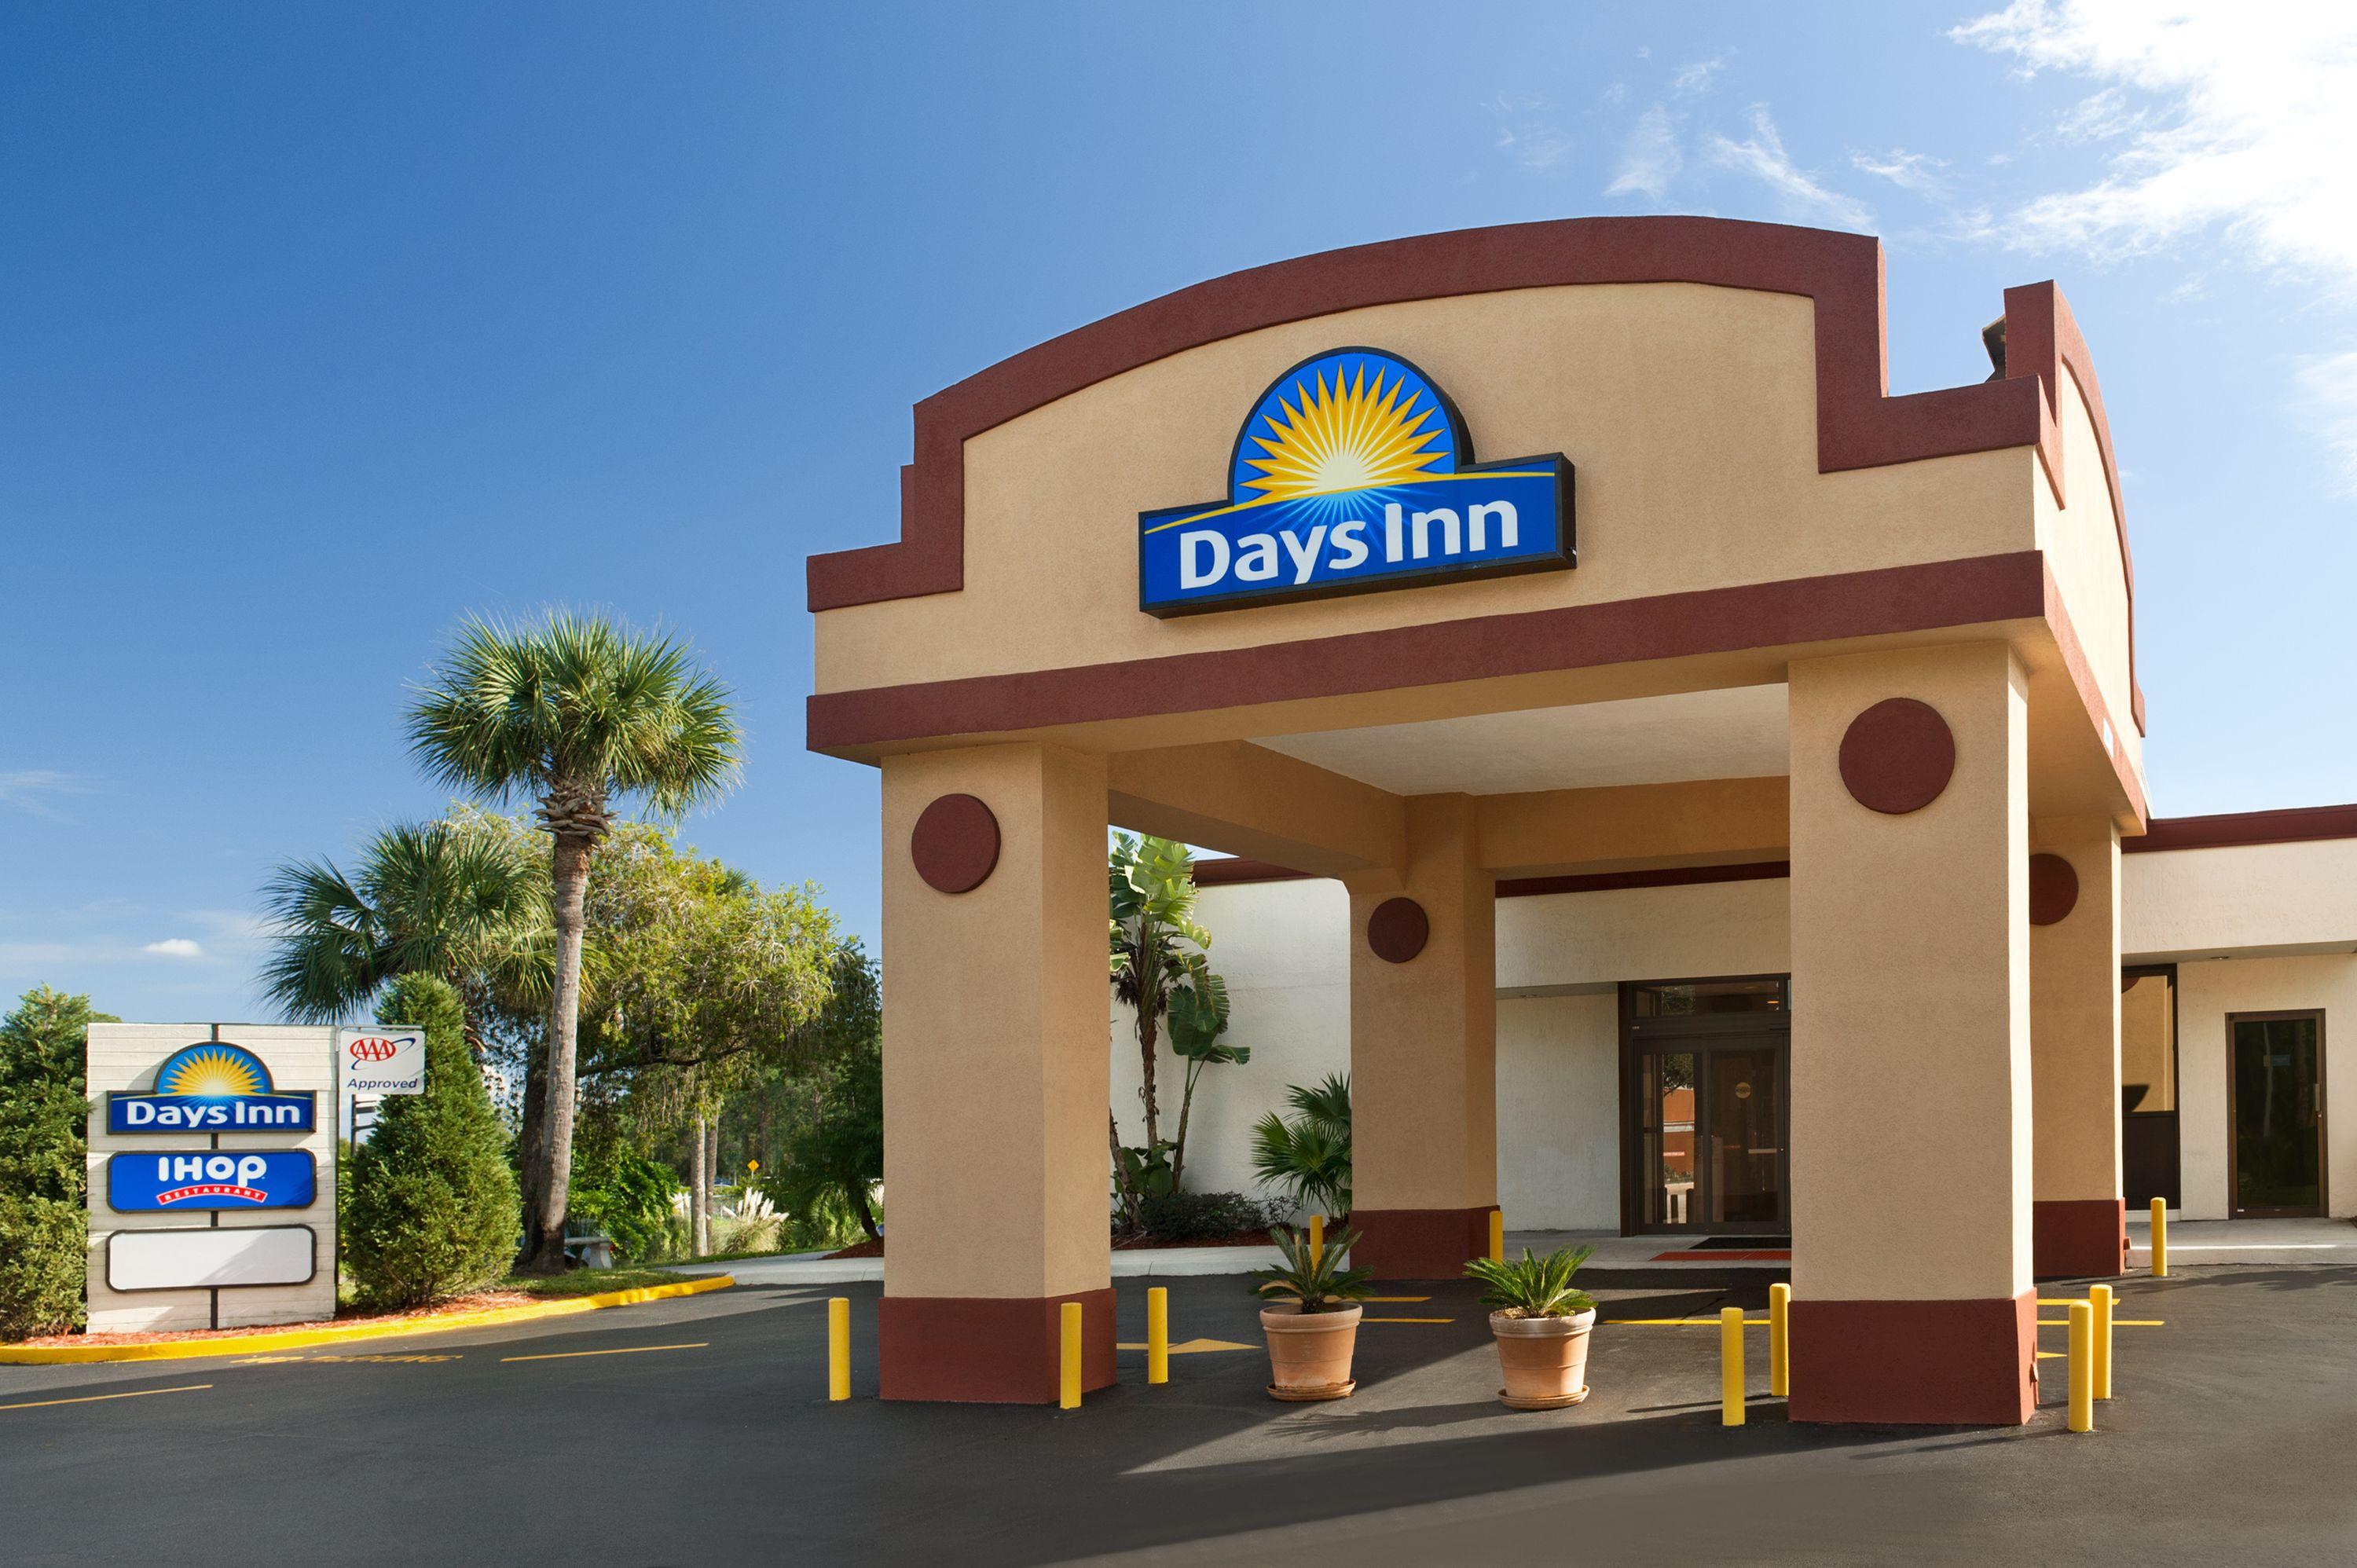 Days Inn by Wyndham Orlando Conv. Center/International Dr, Orlando